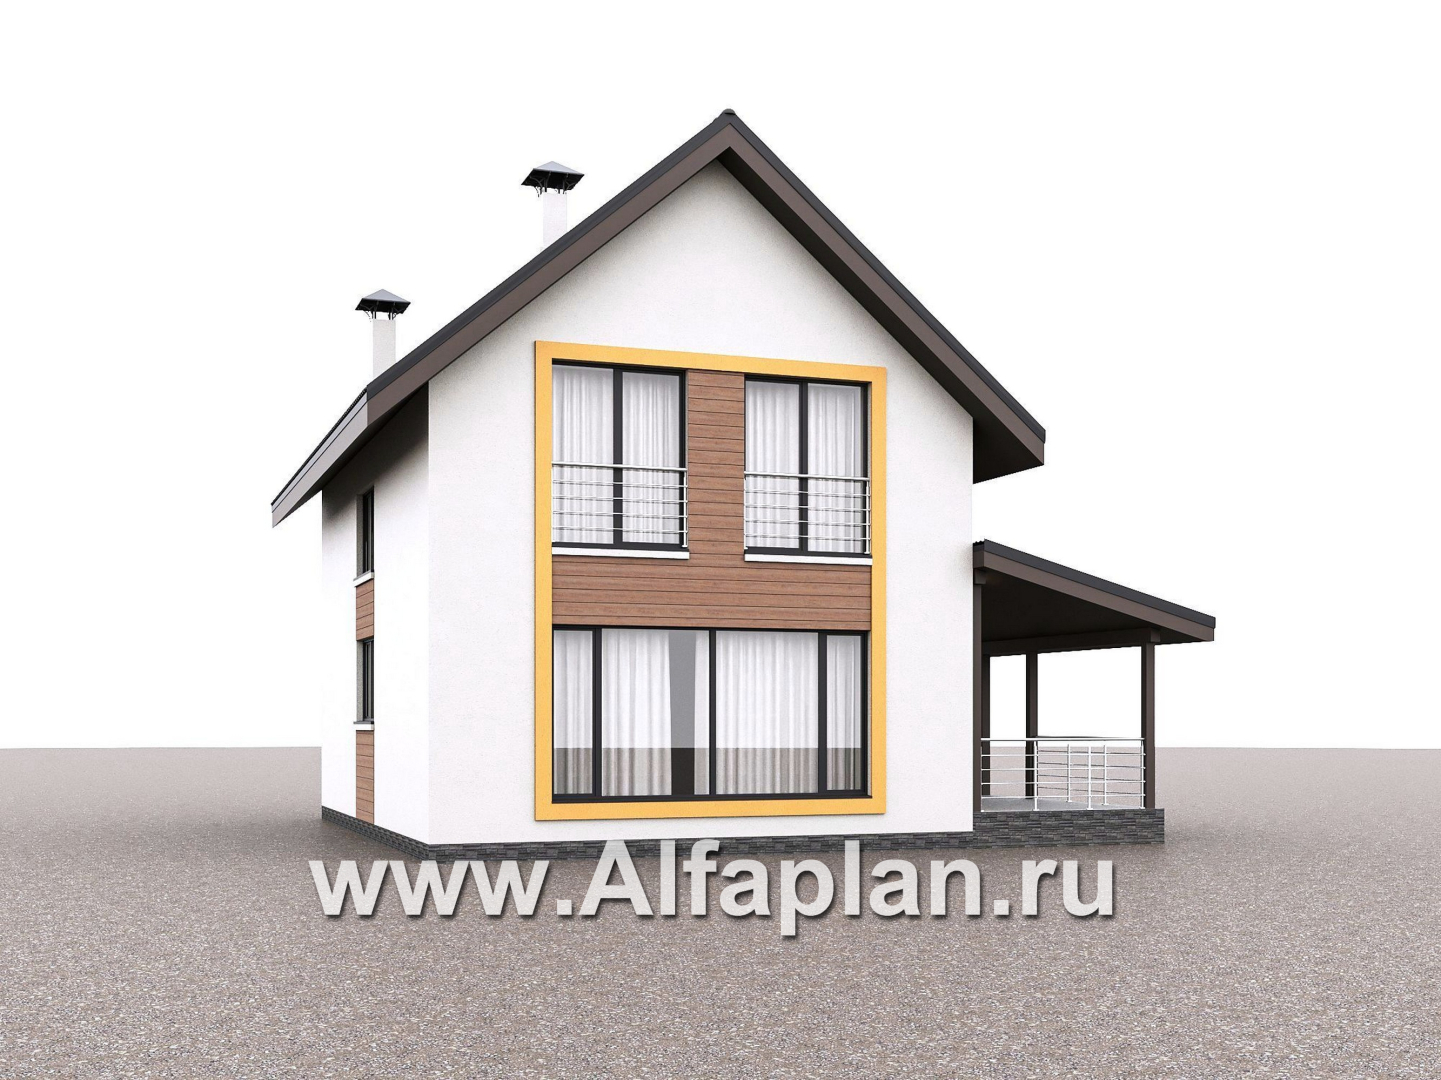 Проекты домов Альфаплан - "Викинг" - проект дома, 2 этажа, с сауной и с террасой сбоку, в скандинавском стиле - дополнительное изображение №3